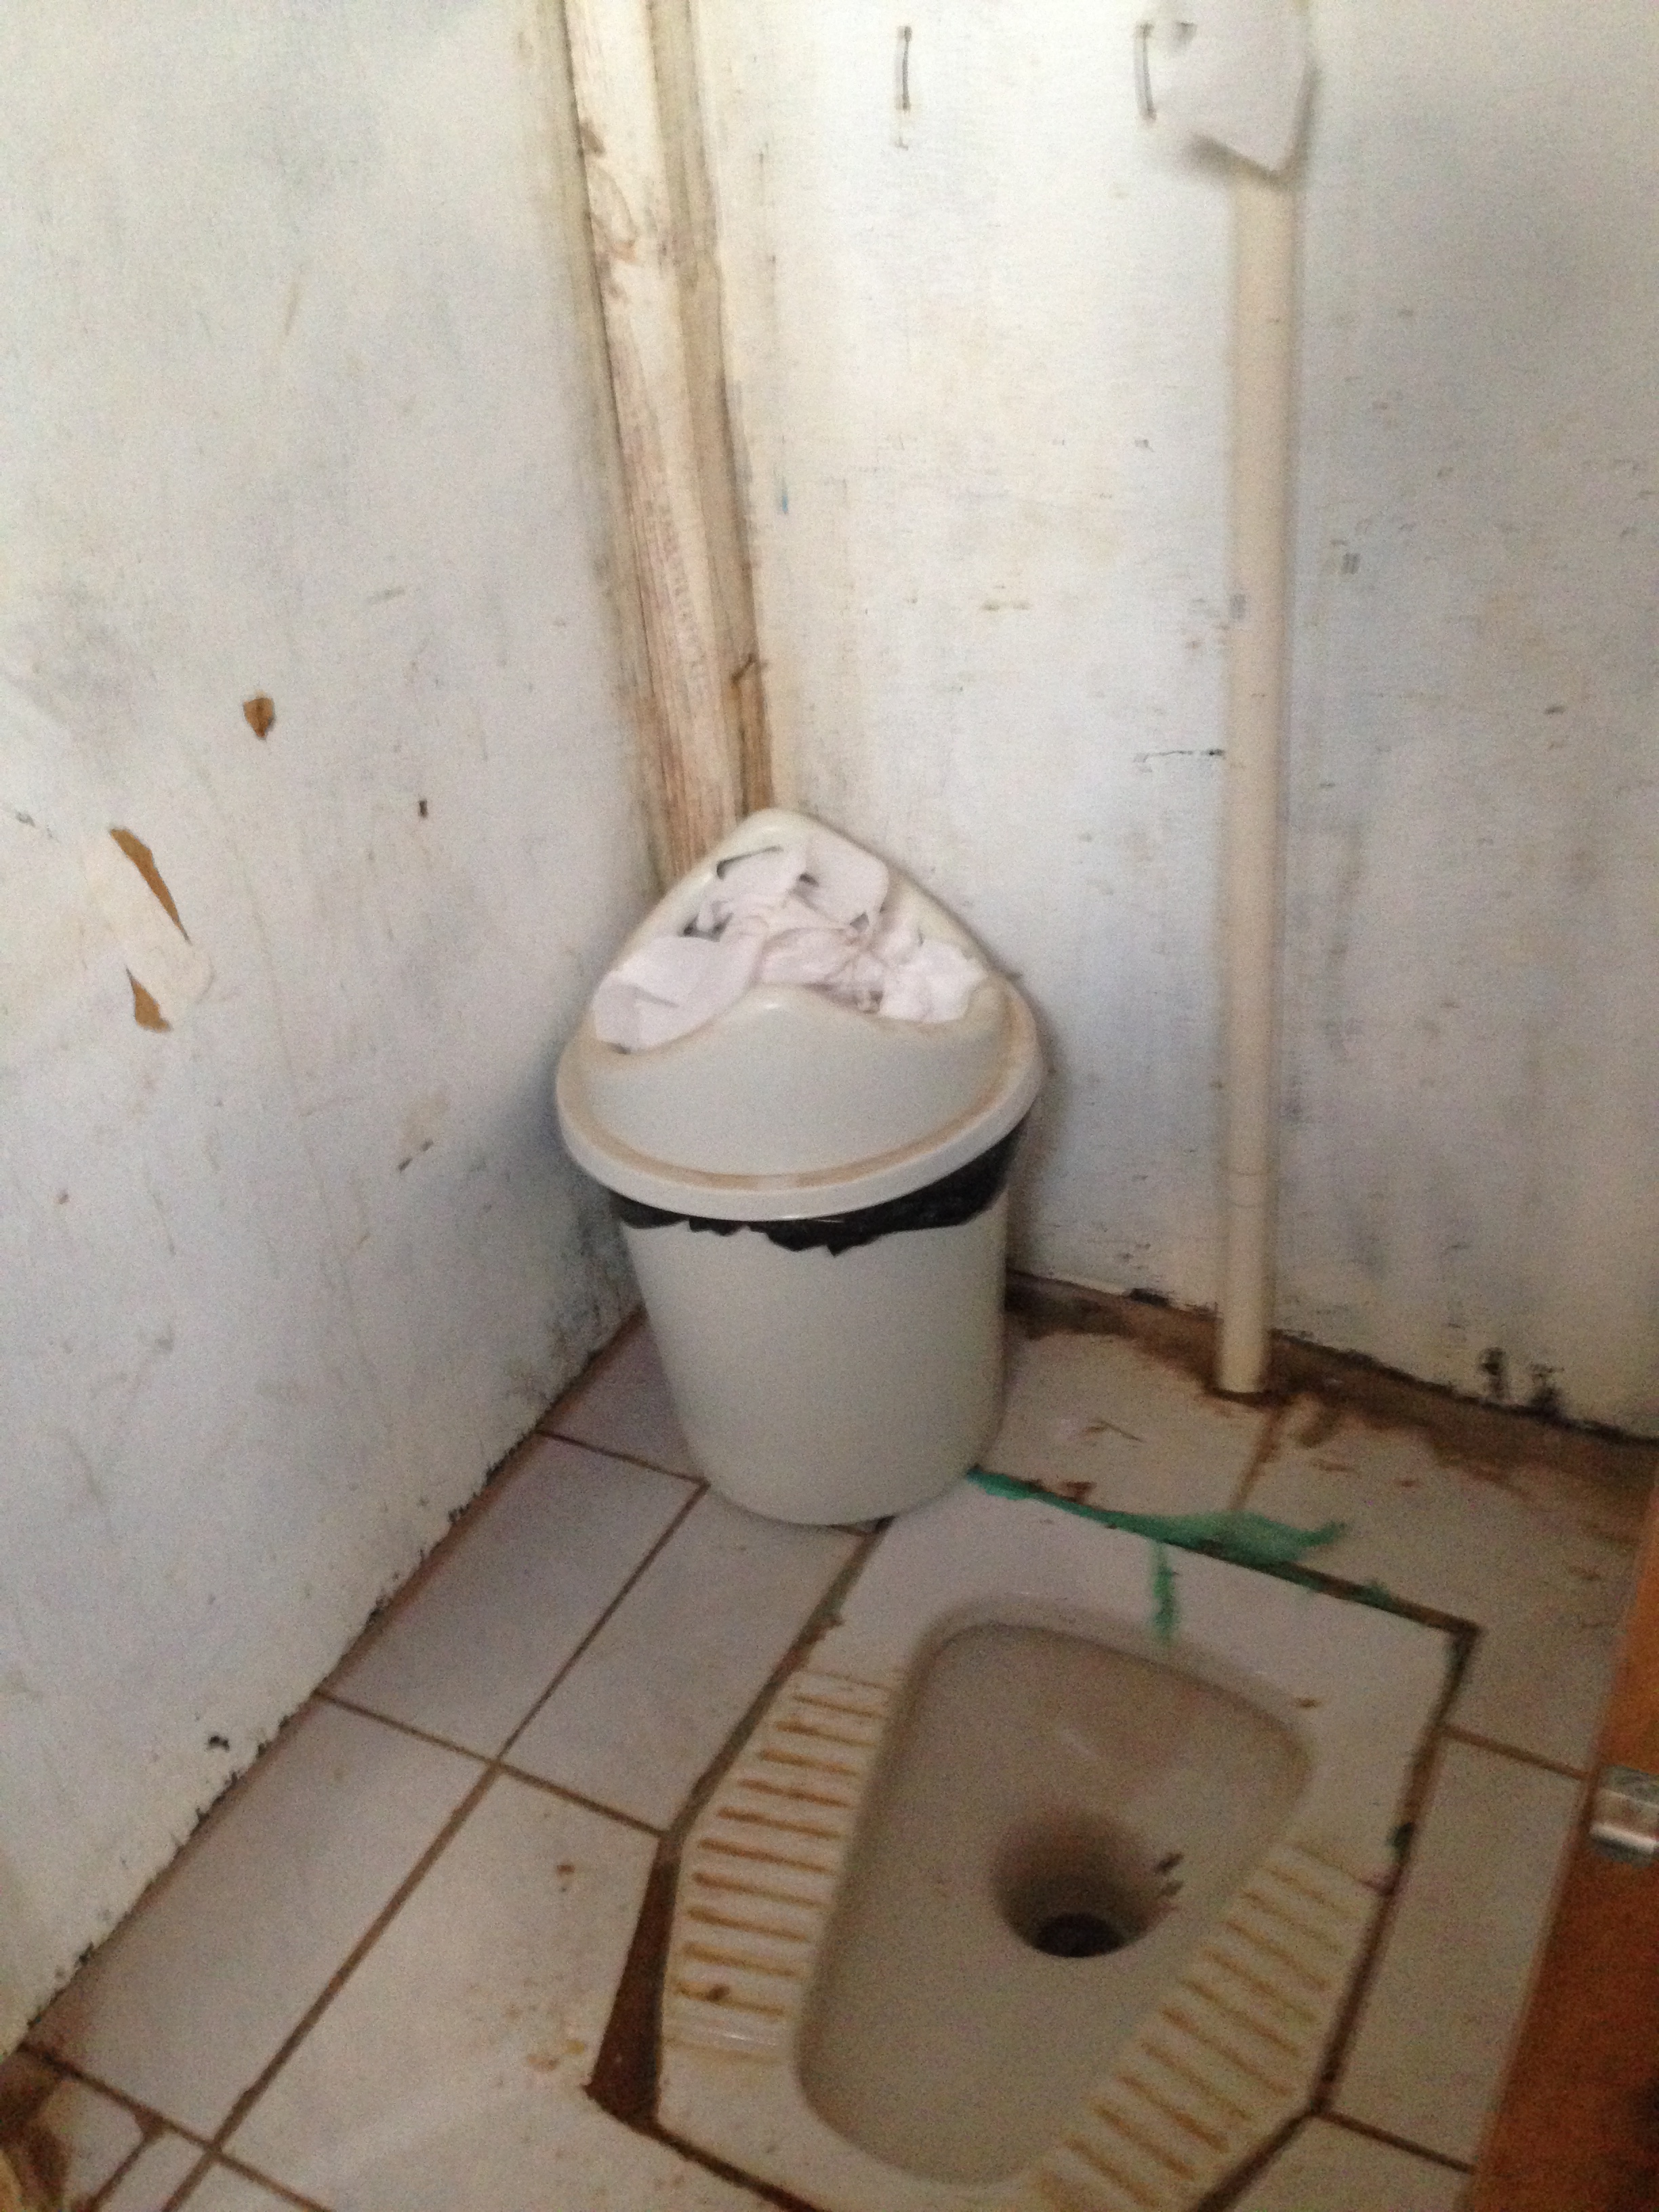 Fossa turca em banheiro localizado no andar de baixo do refetório